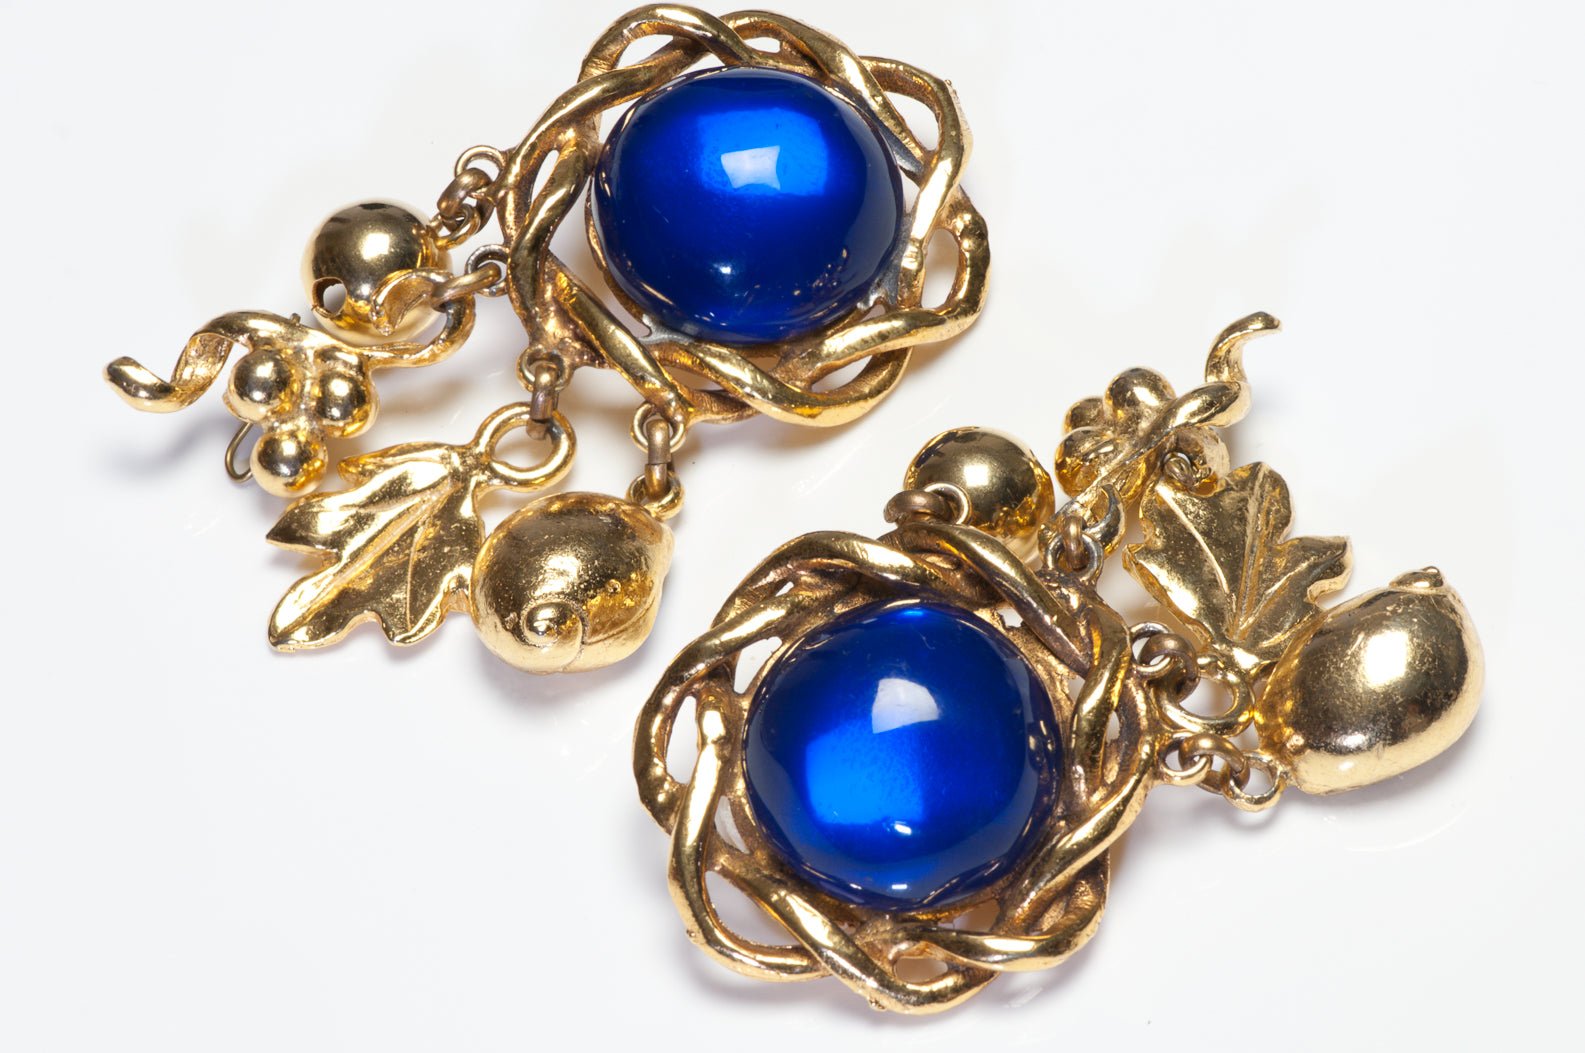 Emanuel Ungaro Paris 1980’s Blue Poured Glass Charm Earrings